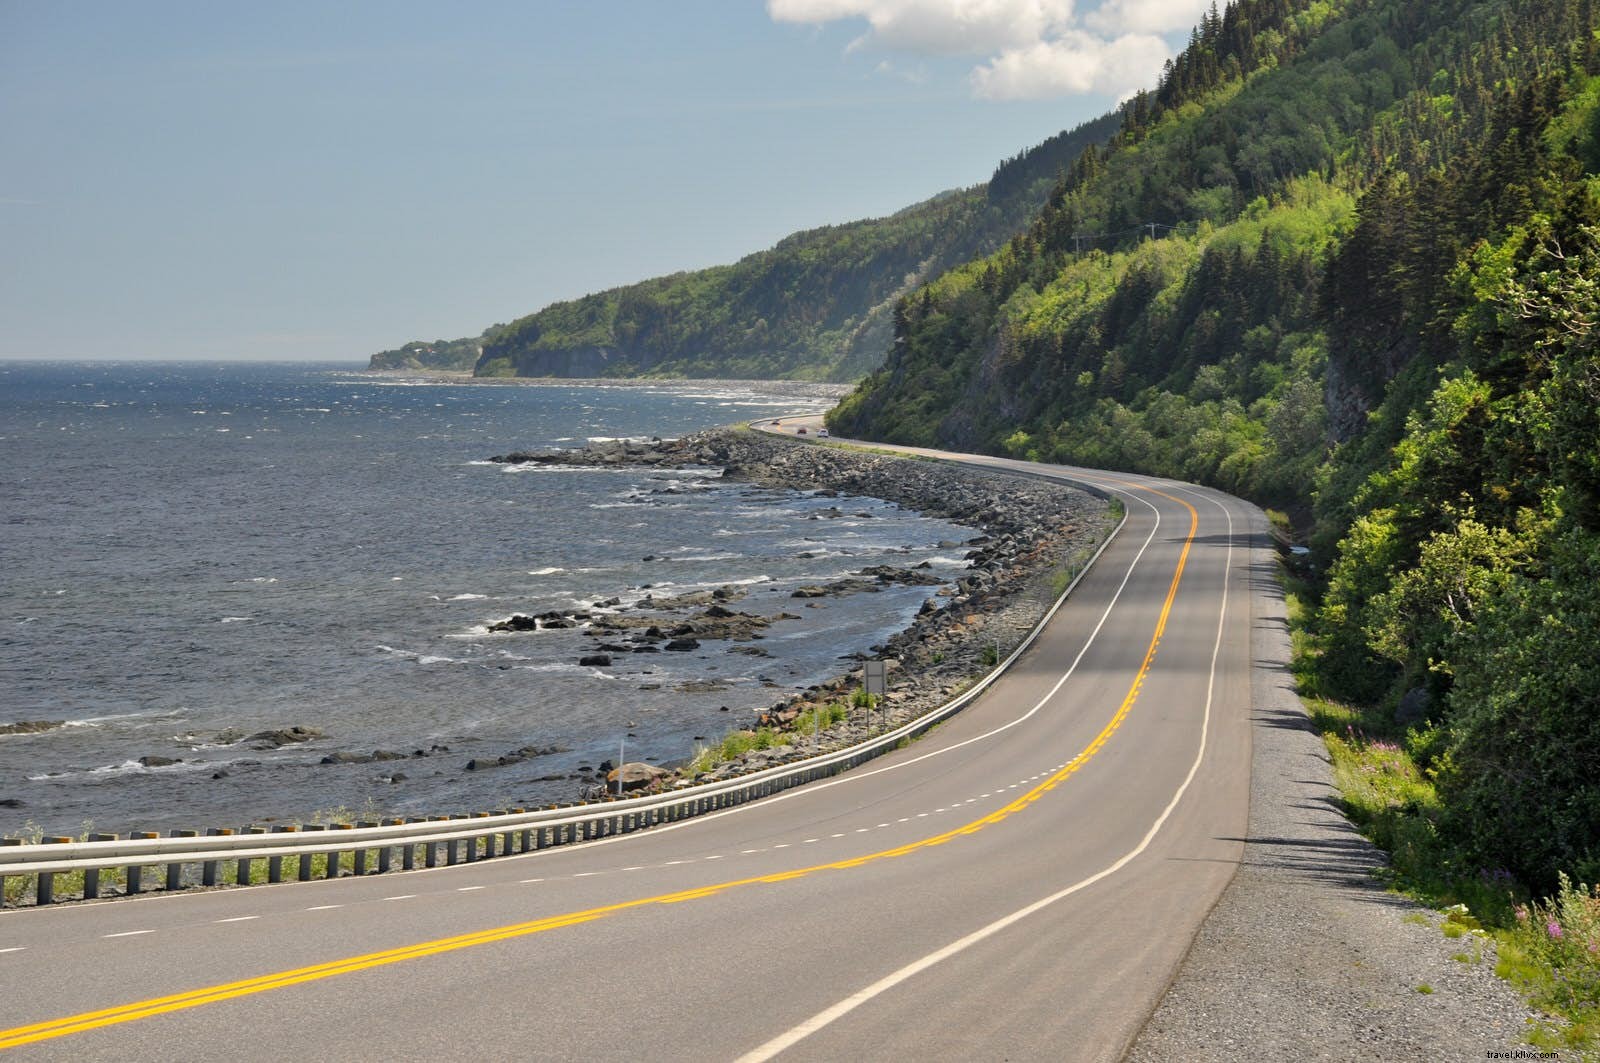 De la autopista a las olas altas:cinco viajes por carretera costeros fuera de lo común 